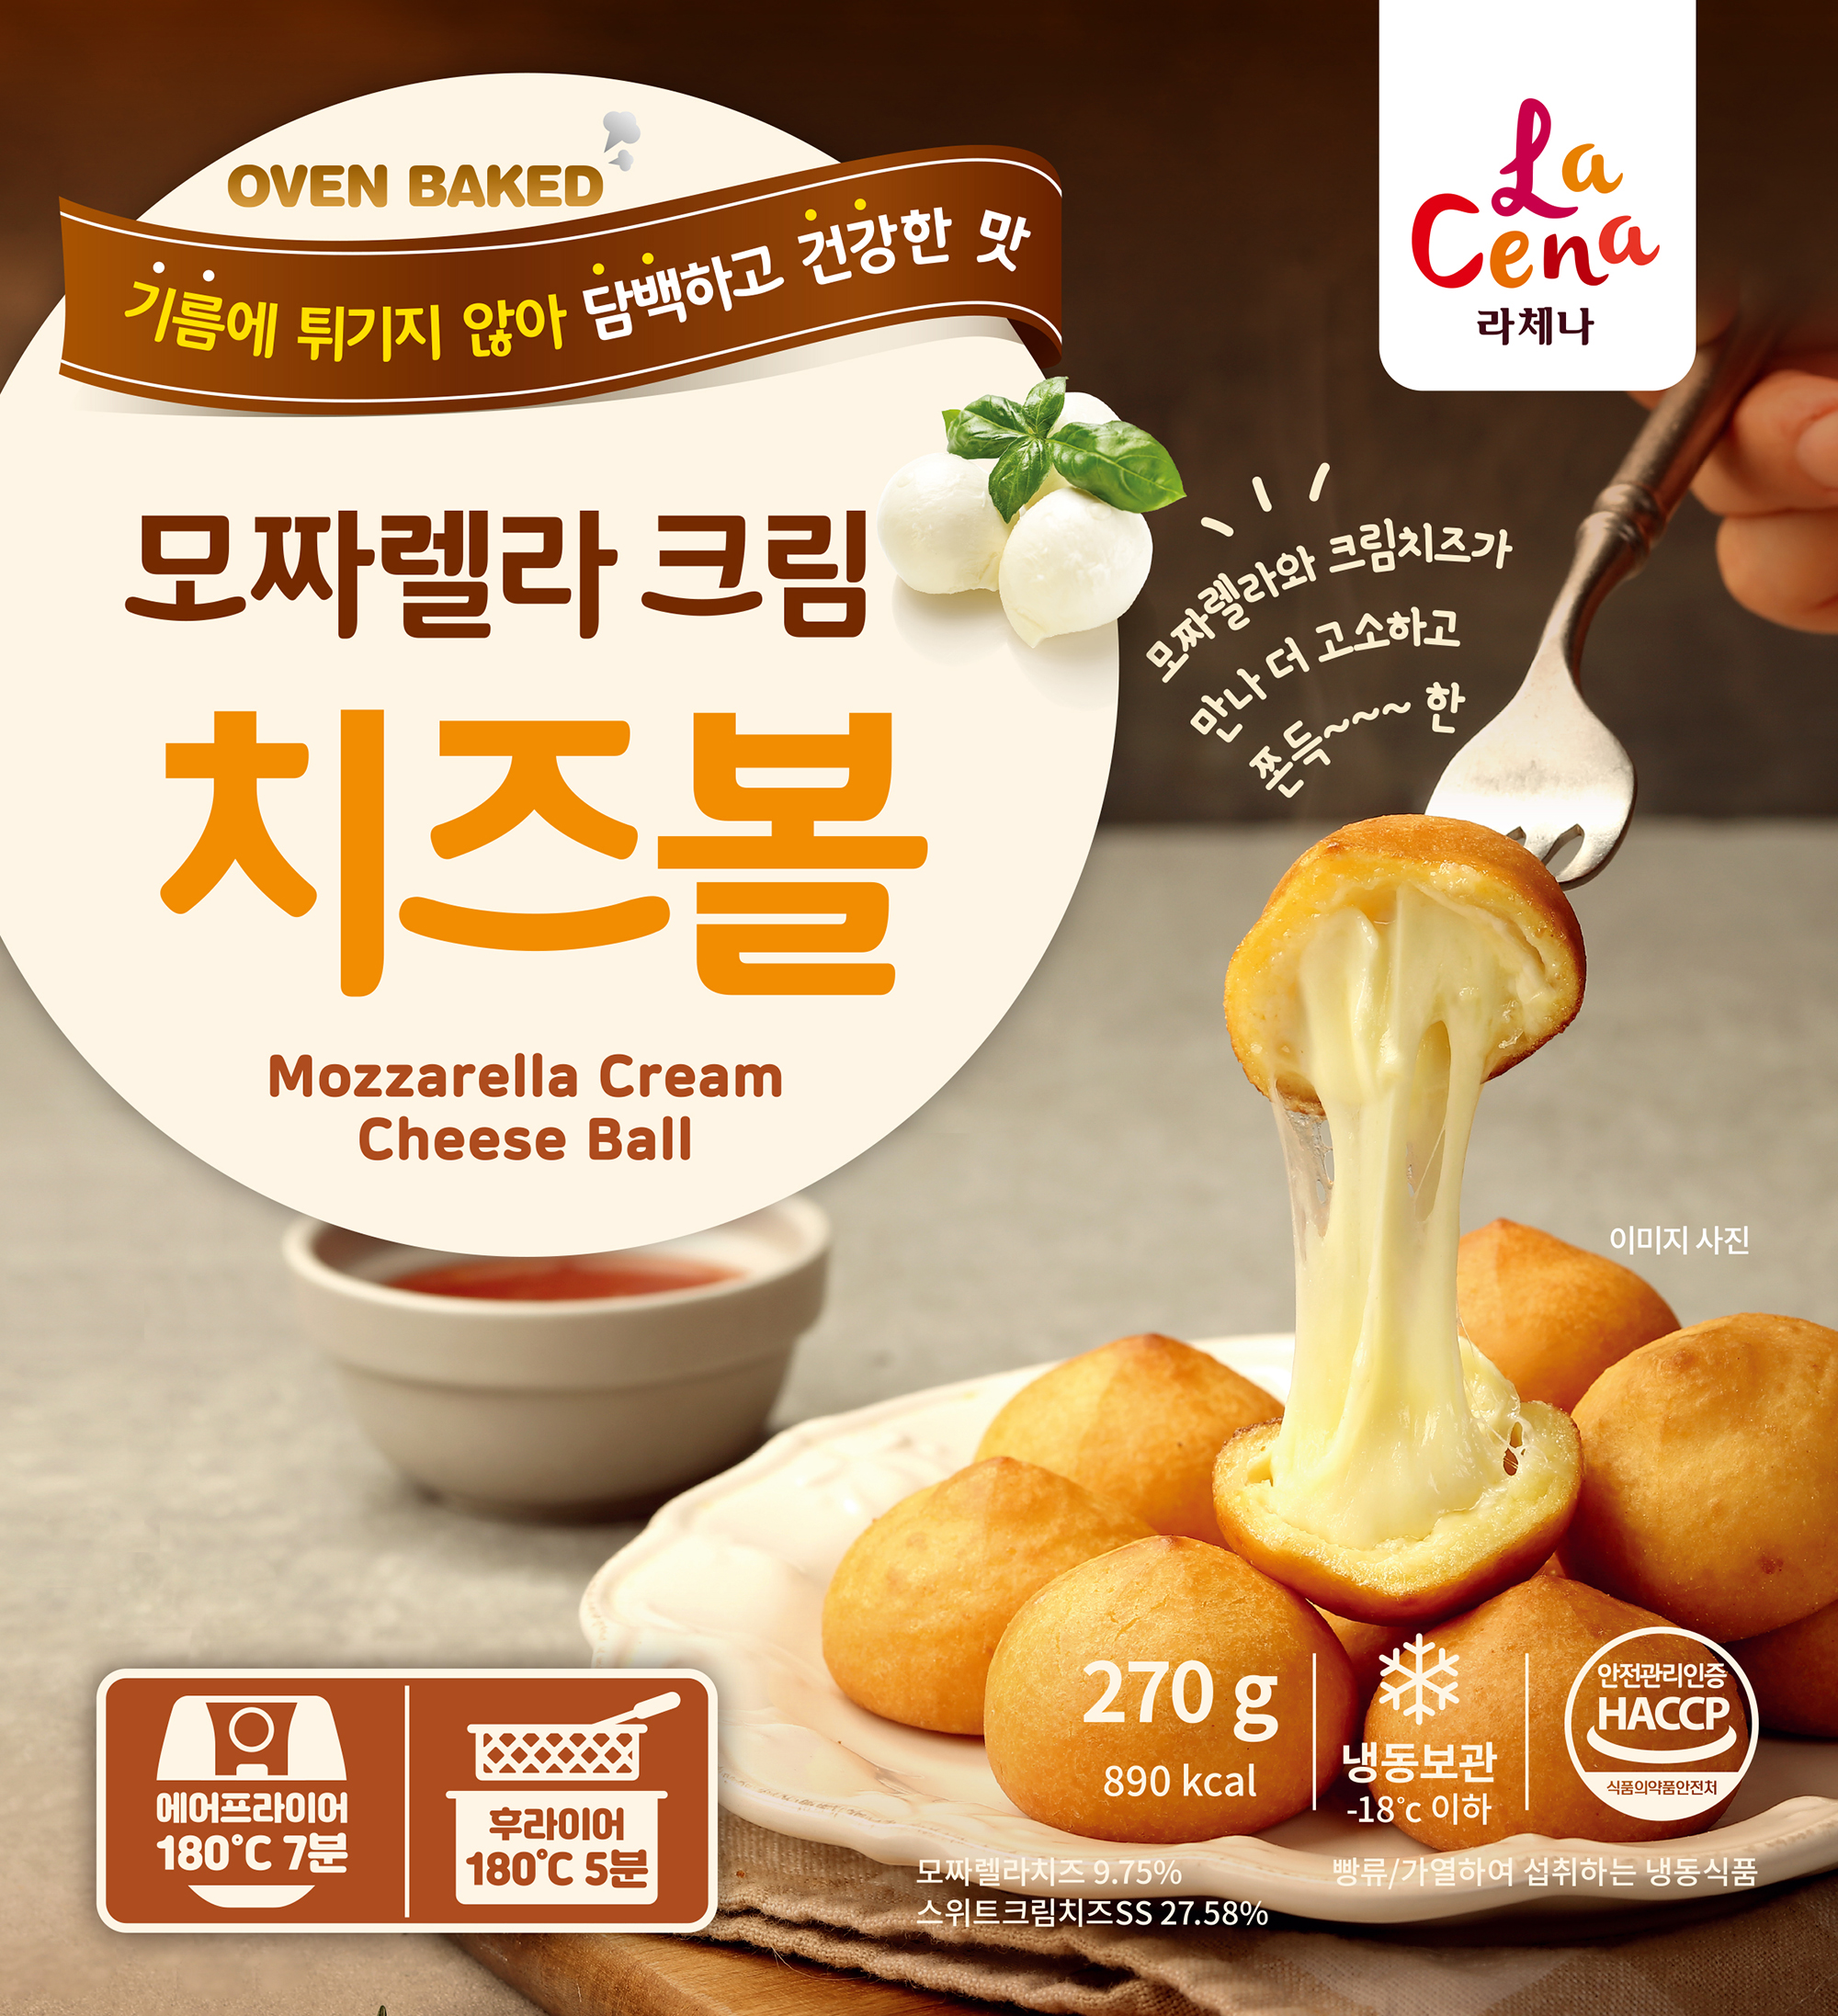 Mozzarella Cream Cheeseball